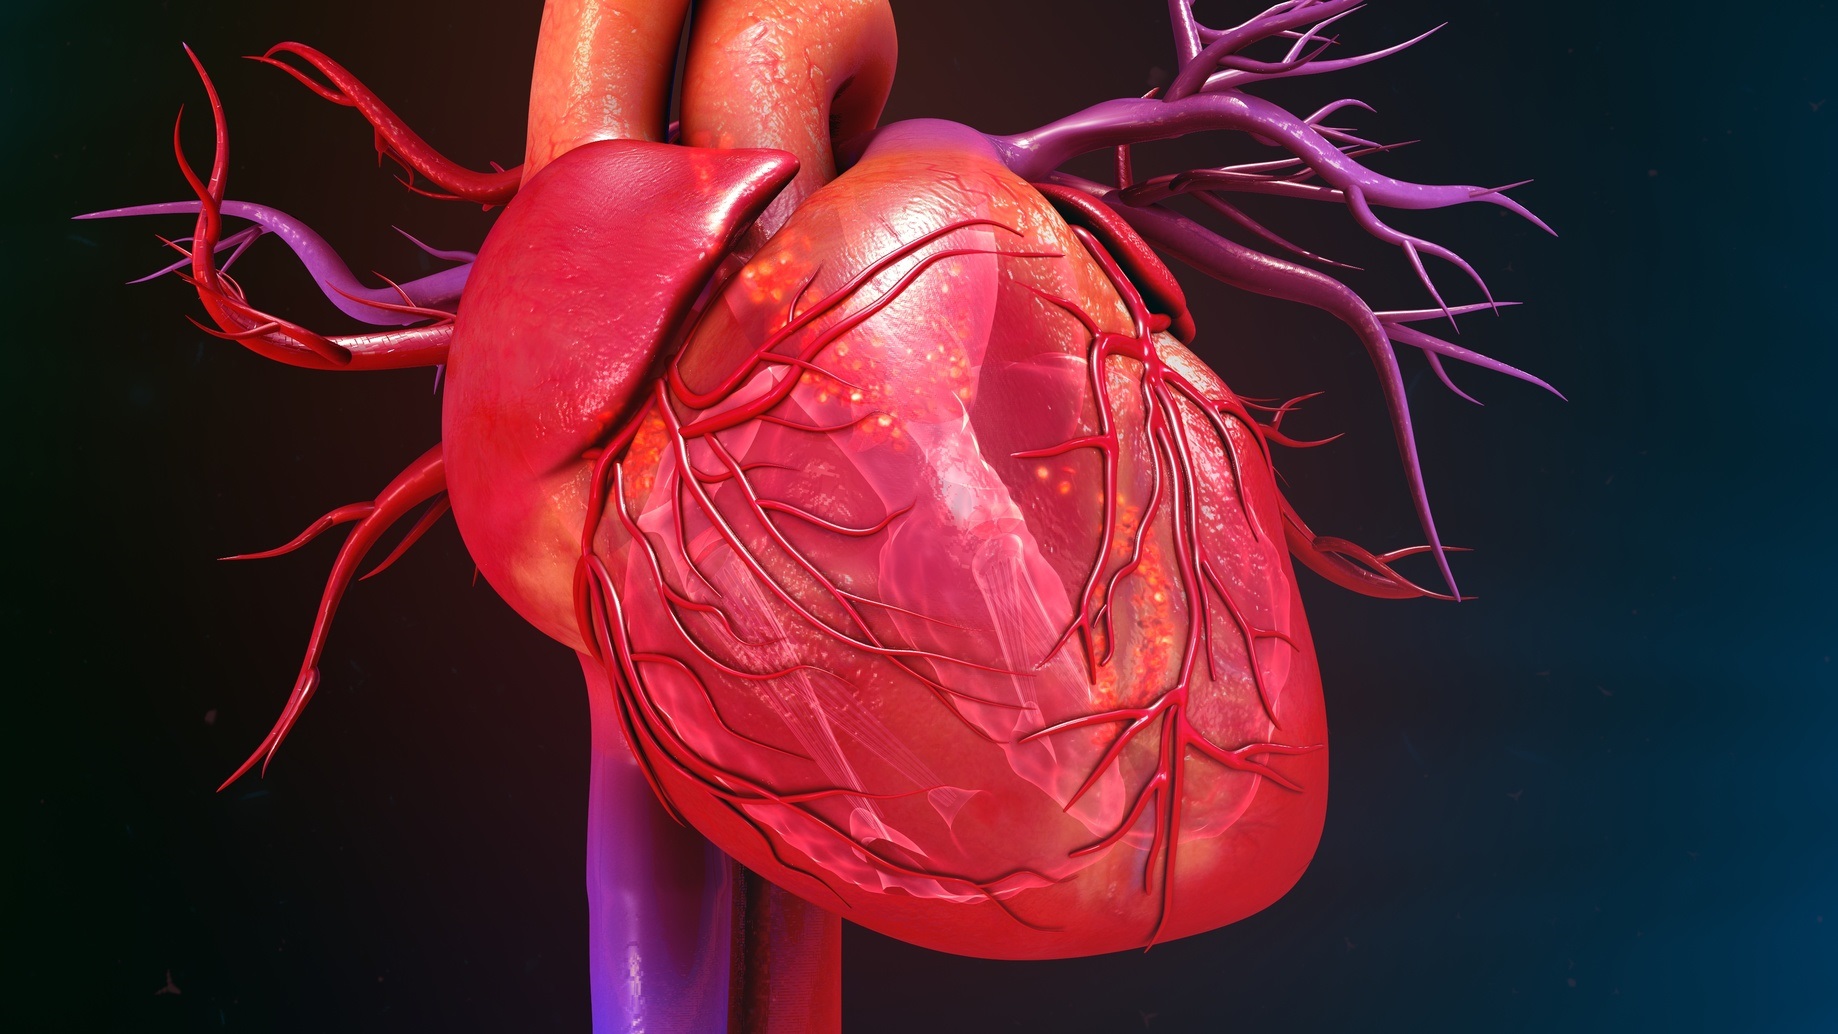 Après avoir modélisé le cœur en 3D, les scientifiques l’impriment en 3D pour pouvoir réaliser des tests. © 7activestudio, Fotolia